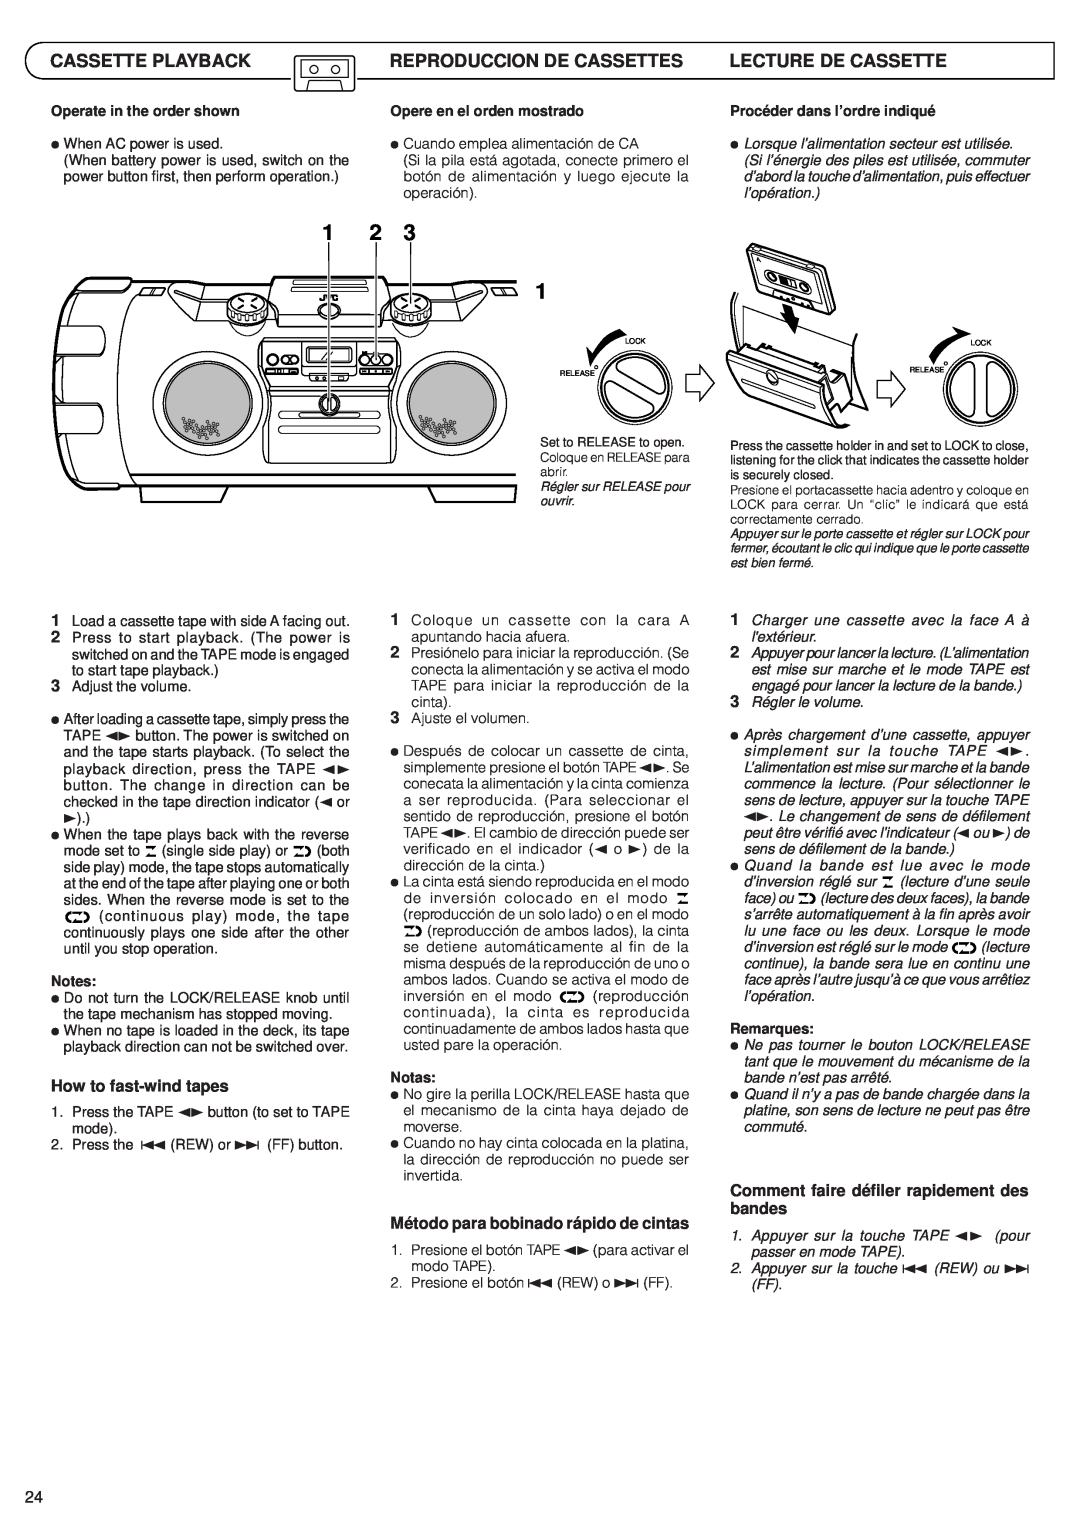 JVC RV-B99 manual Cassette Playback, Reproduccion De Cassettes, Lecture De Cassette, How to fast-windtapes 